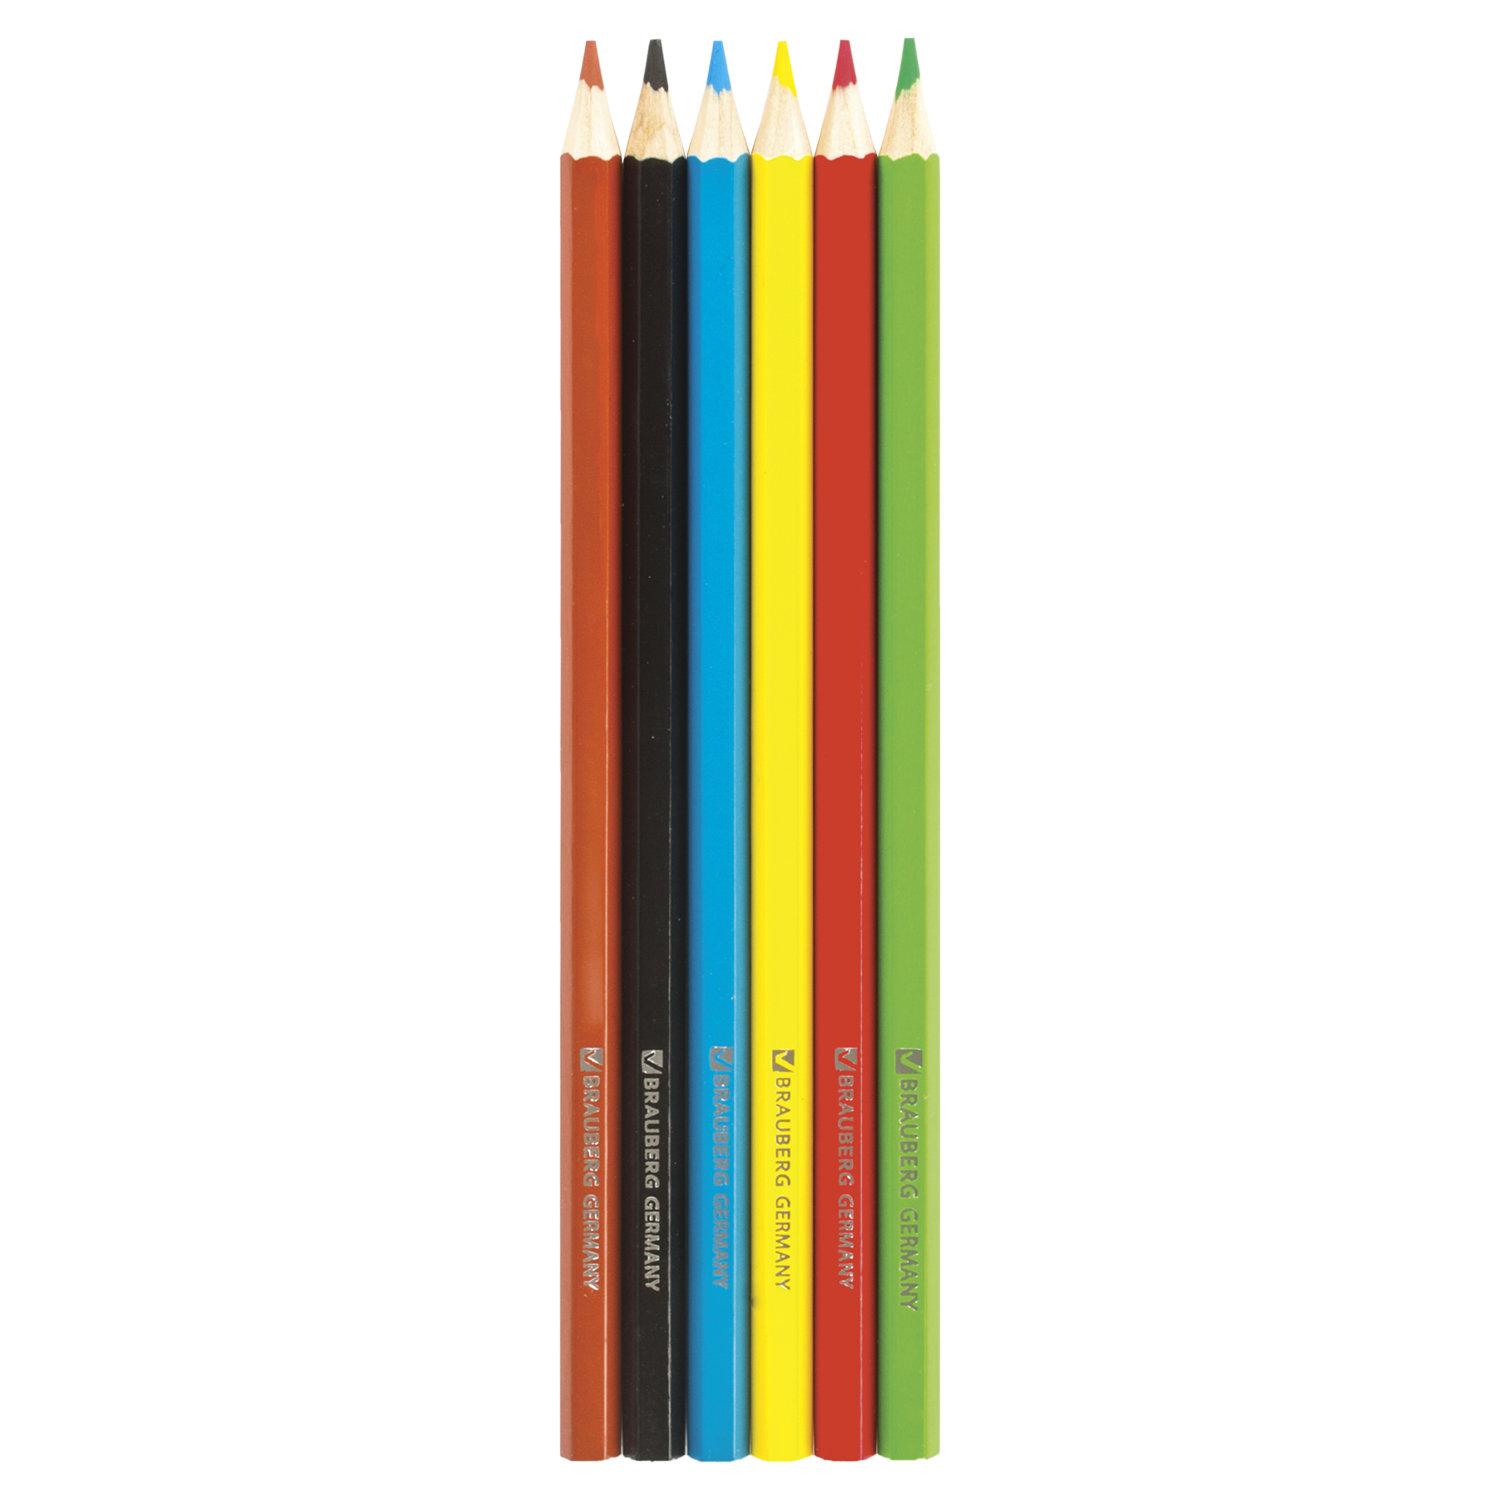 Цветные карандаши 6. БРАУБЕРГ карандаши 6 цвета. БРАУБЕРГ канцтовары карандаши. Карандаши цветные "BRAUBERG" 6 цветов (1/24) 180518. Цветные карандаши 6 цветов.